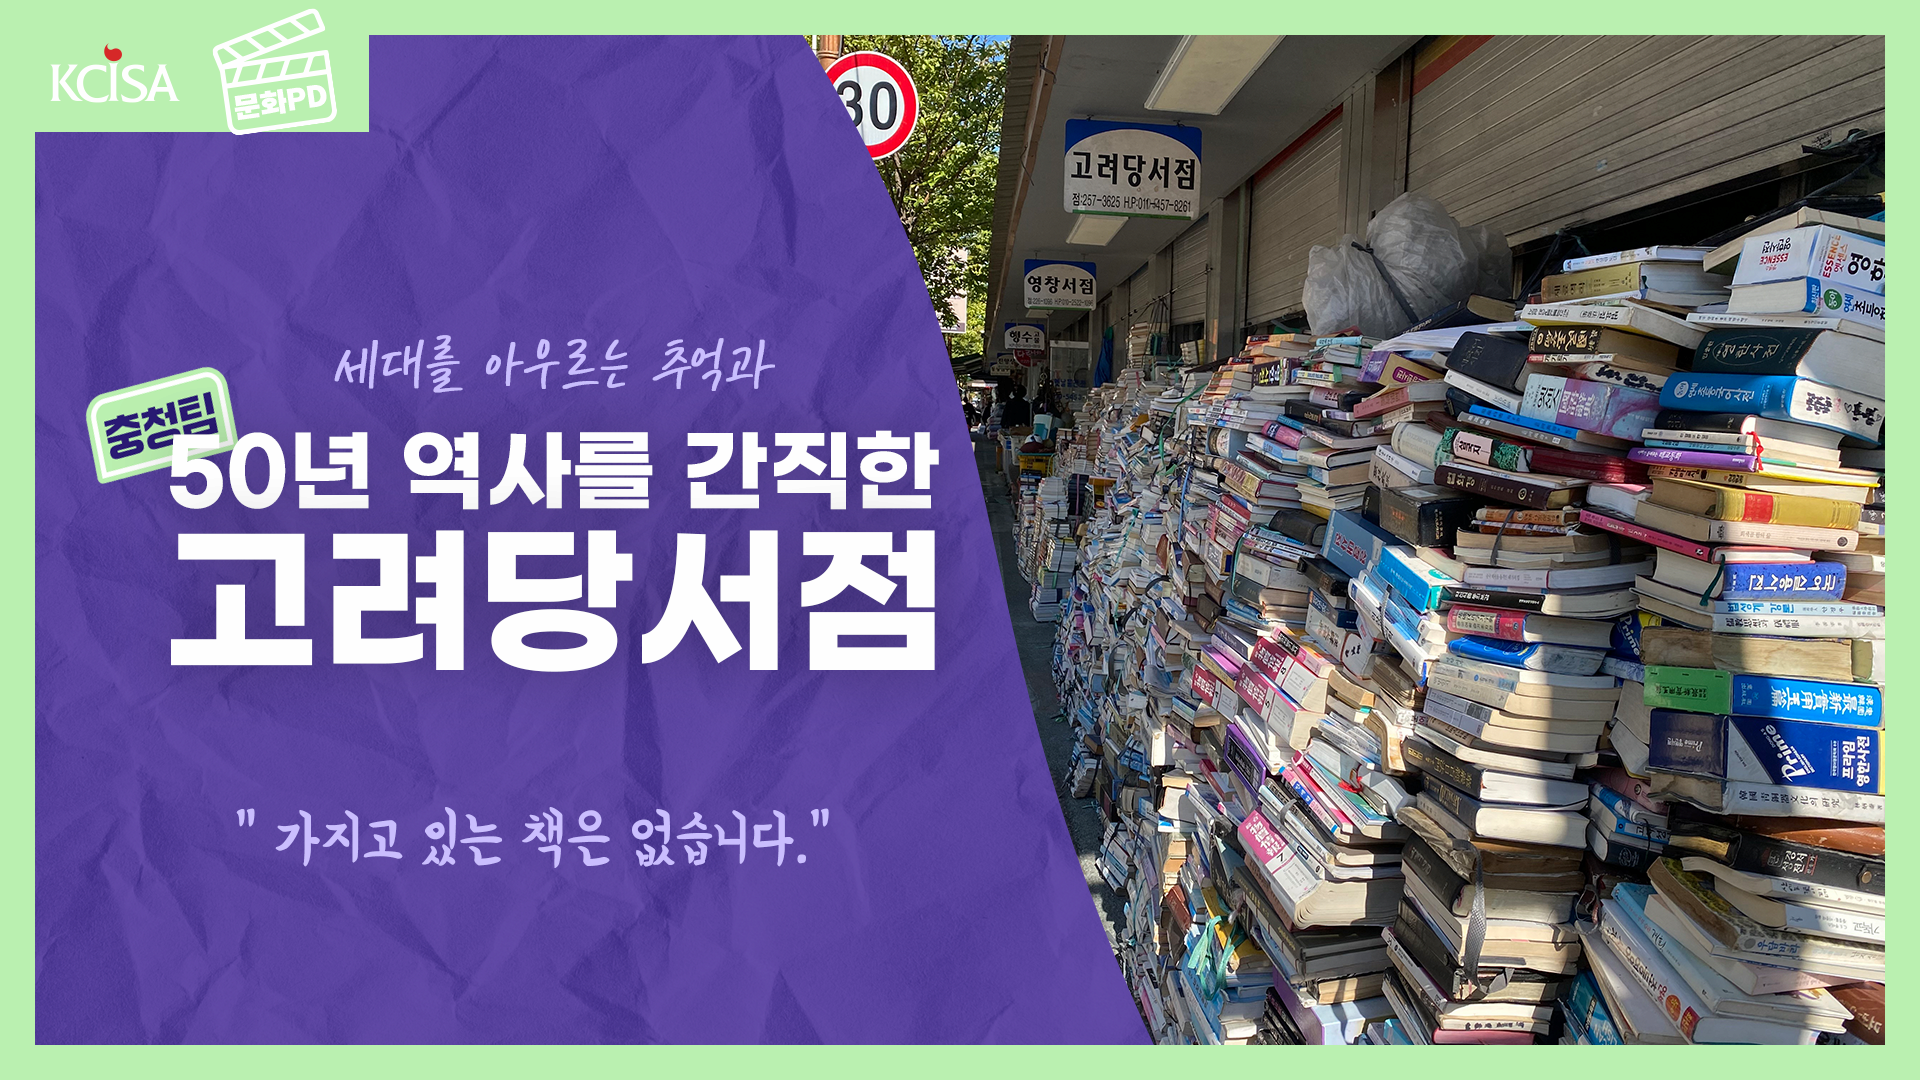 [문화PD] 6평 책방 안에 5만 권의 책이 담겨 있는 대전 동구에서 가장 오래된 책방, 고려당 서점